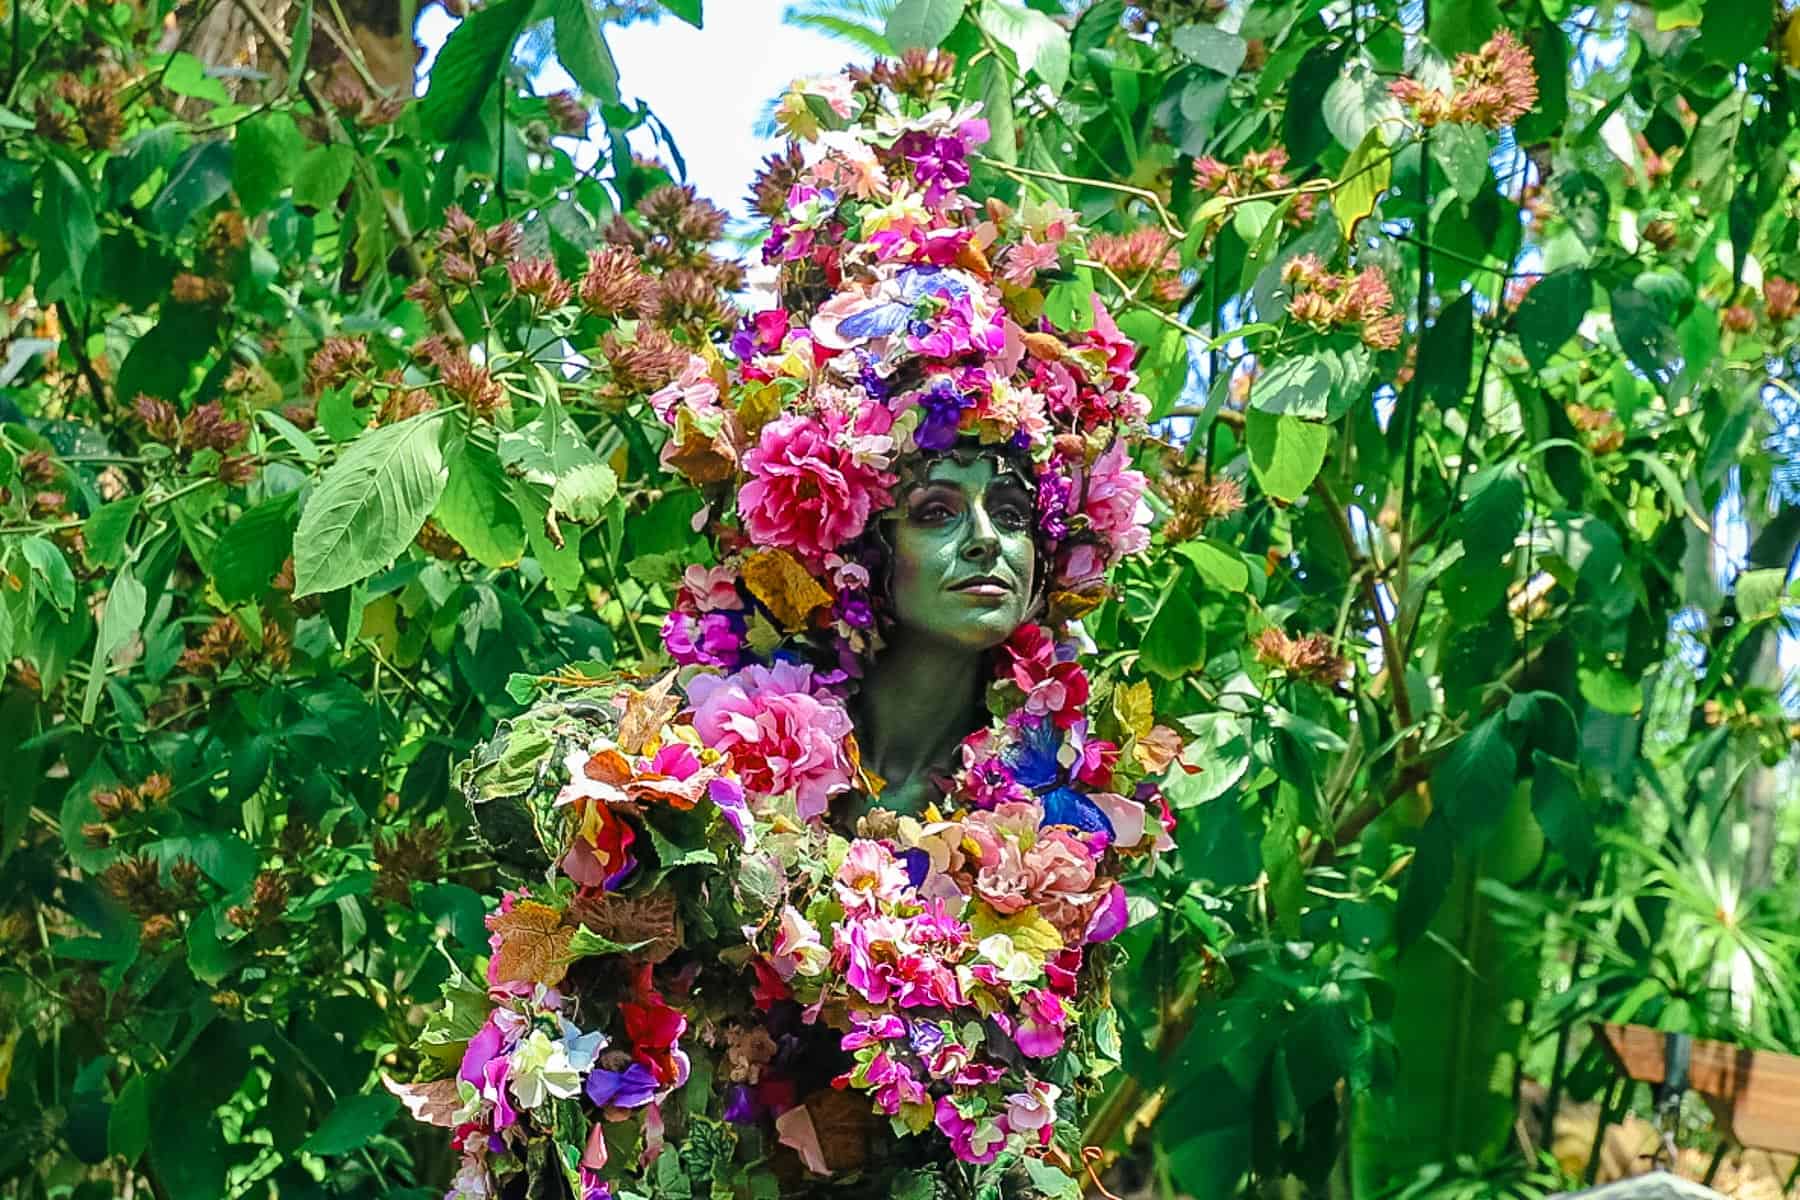 DiVine dressed in florals for Spring at Disney's Animal Kingdom. 